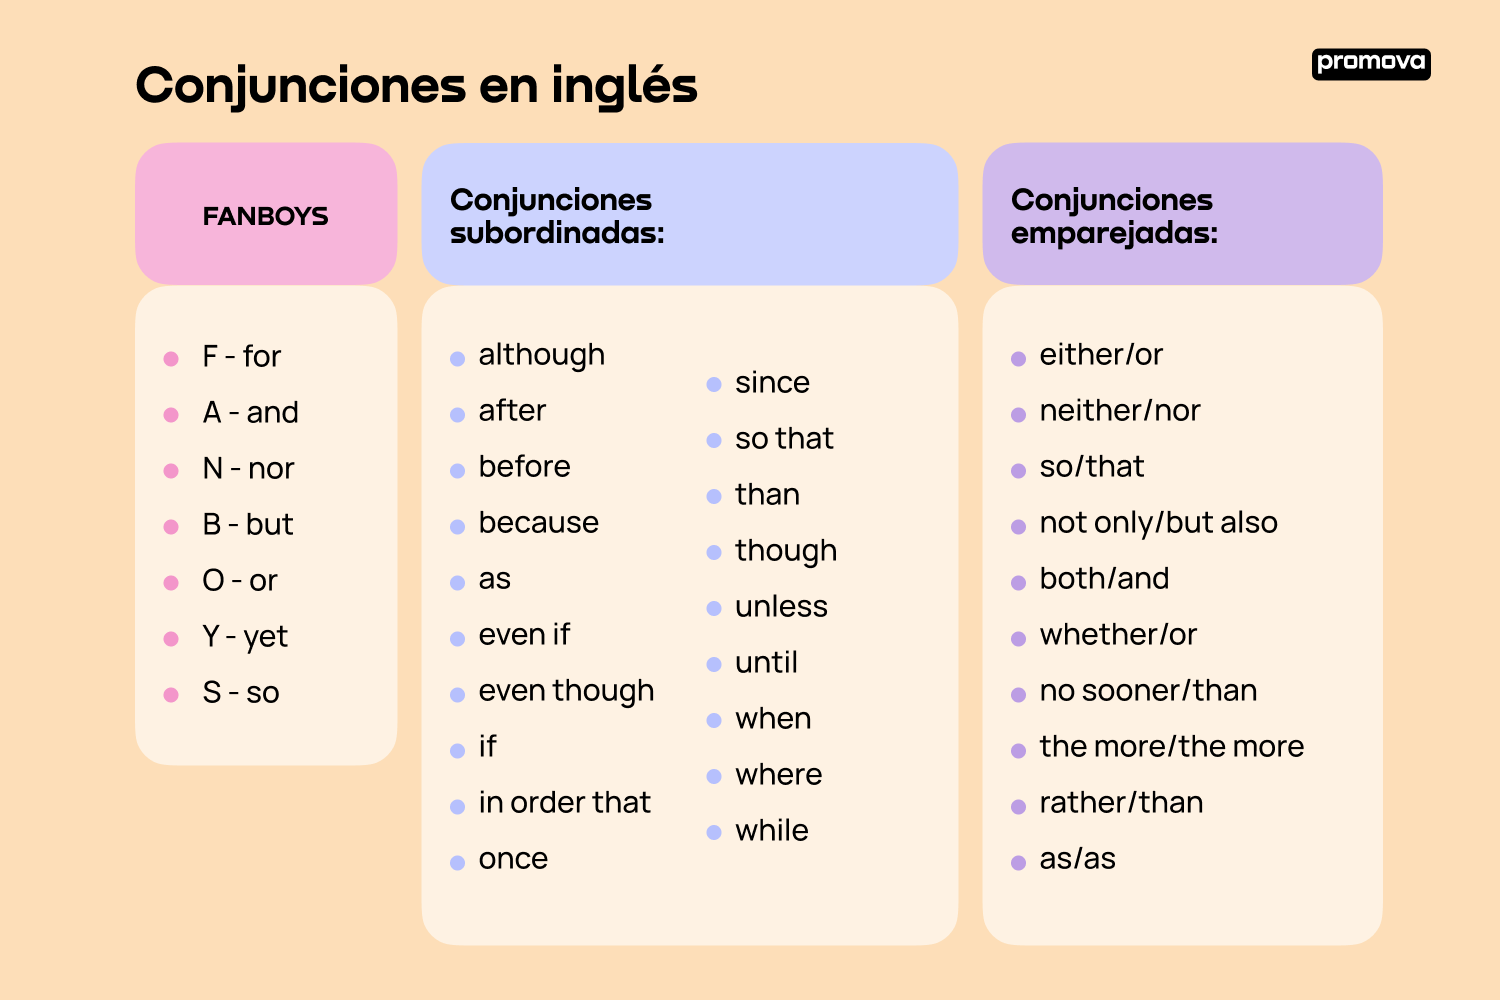 Conjunciones en inglés: Navegando a tipos de conjunciones y errores comunes